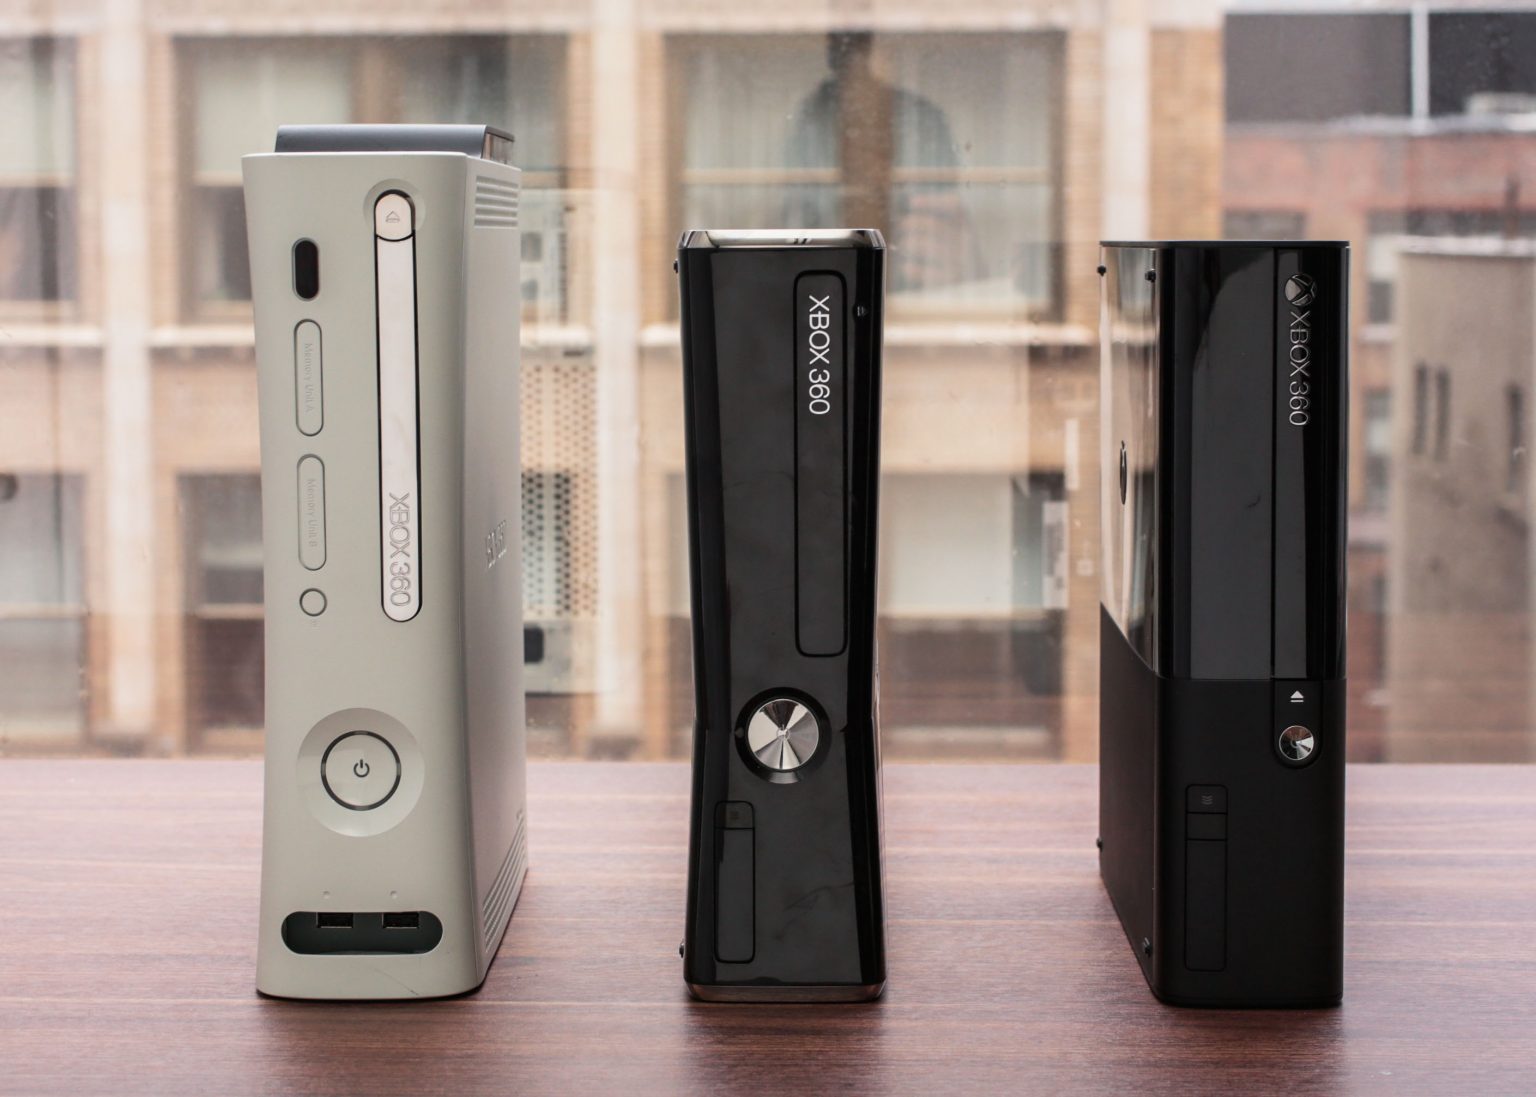 Купить Xbox 360 на доске объявлений: сборник классических игр